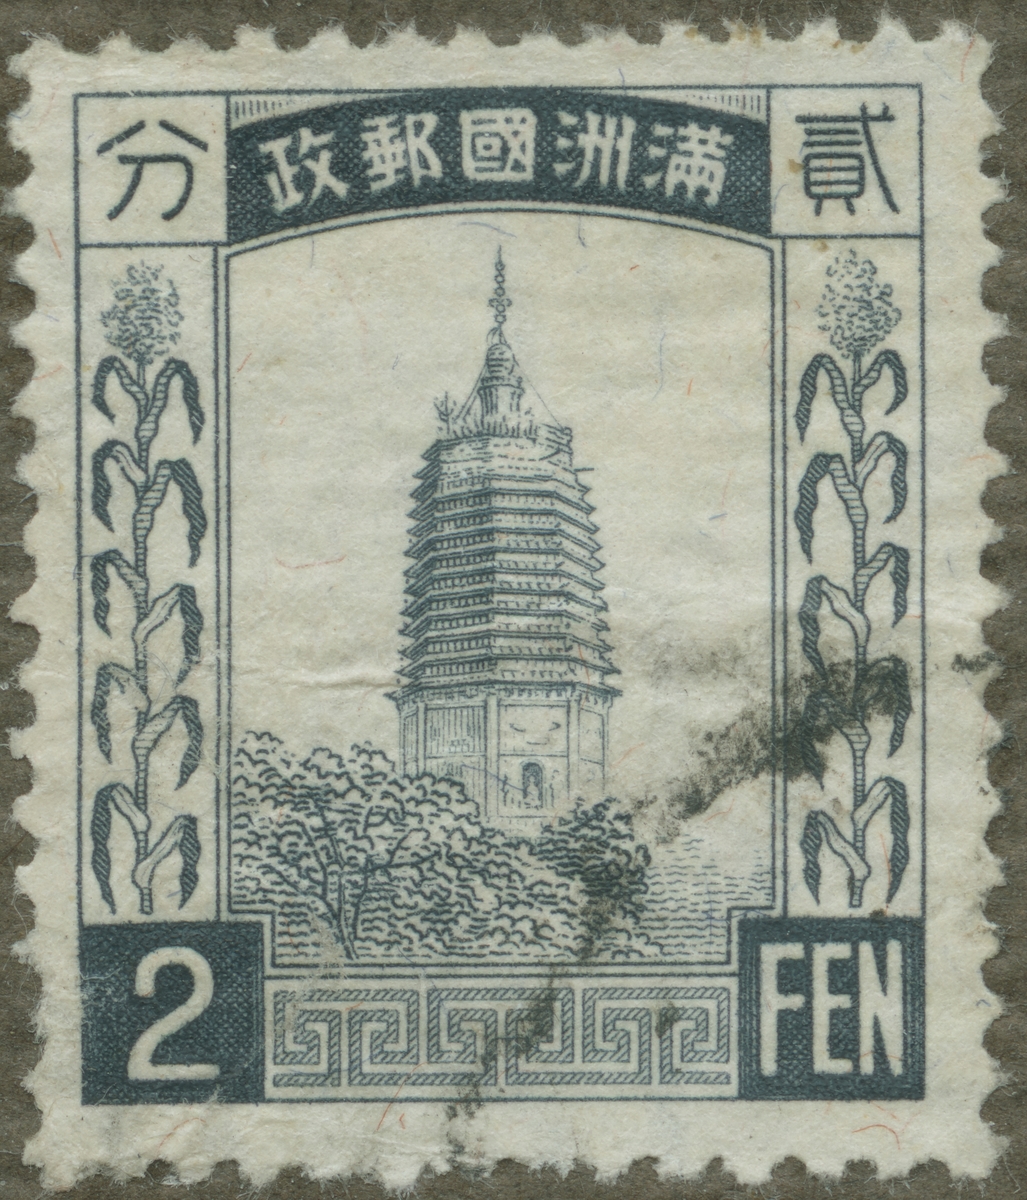 Frimärke ur Gösta Bodmans filatelistiska motivsamling, påbörjad 1950.
Frimärke från Kina, 1934. Motiv av pagod.